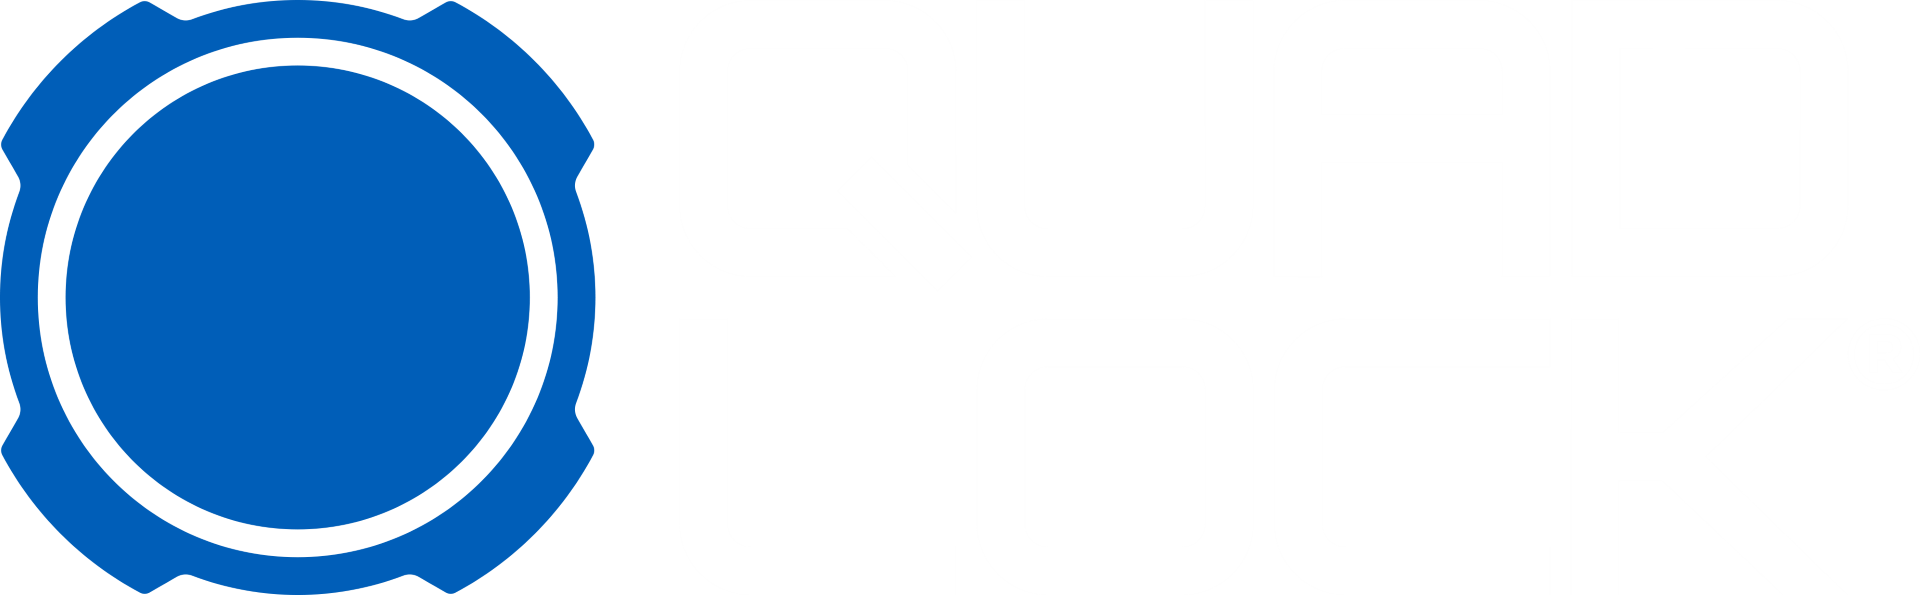 Quad Lock logo